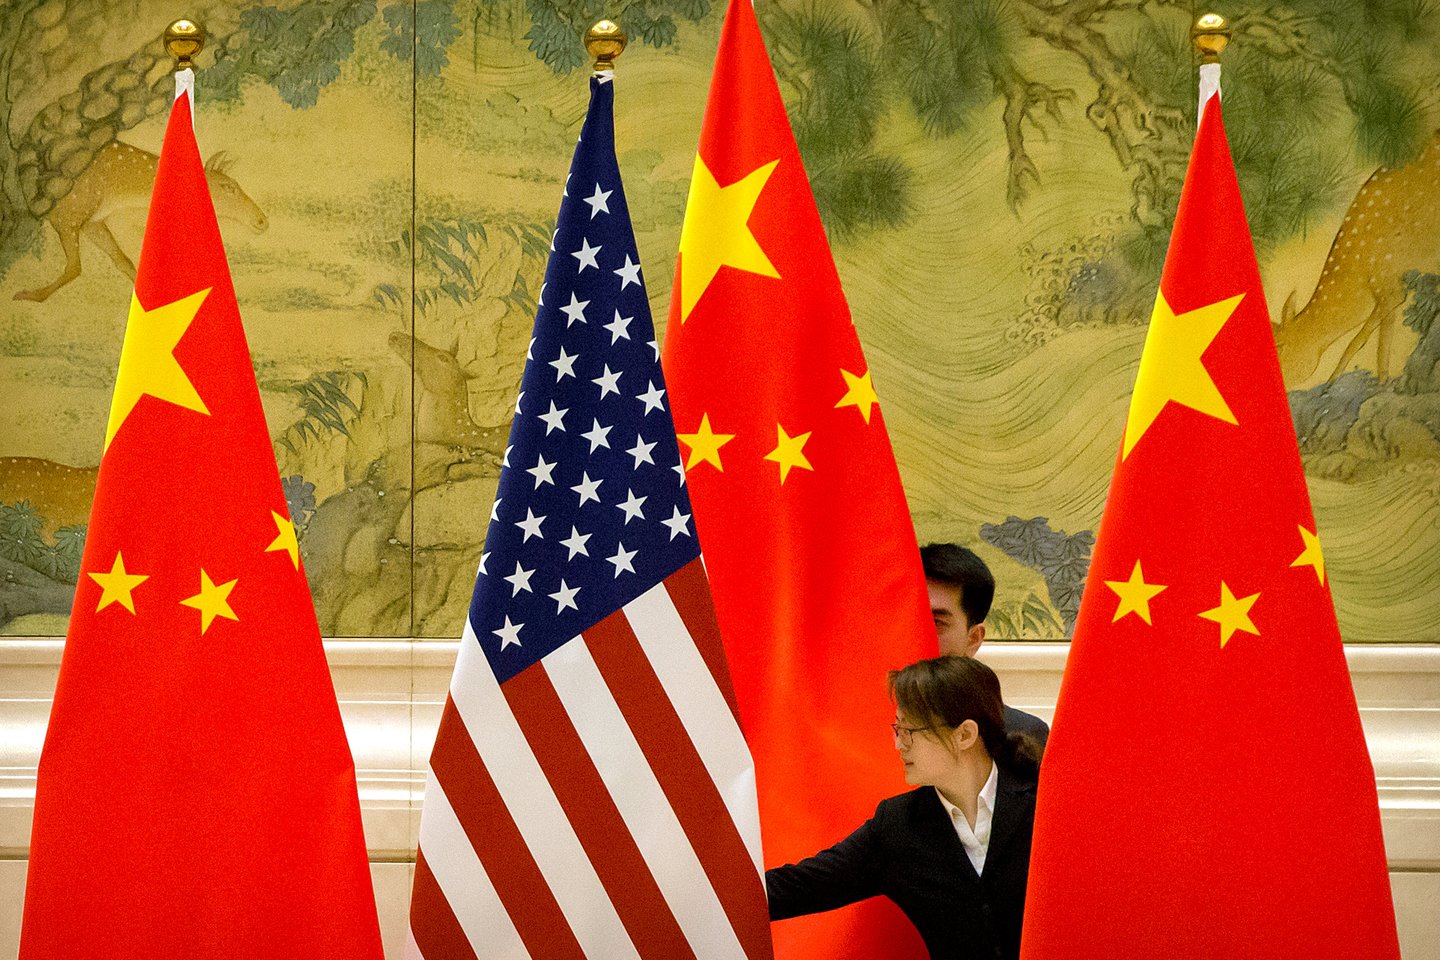  Kinija penktadienį paskelbė, kad atšaukė leidimą veikti JAV konsulatui pietvakariniame Čengdu mieste.<br> Reuters/Scanpix nuotr.